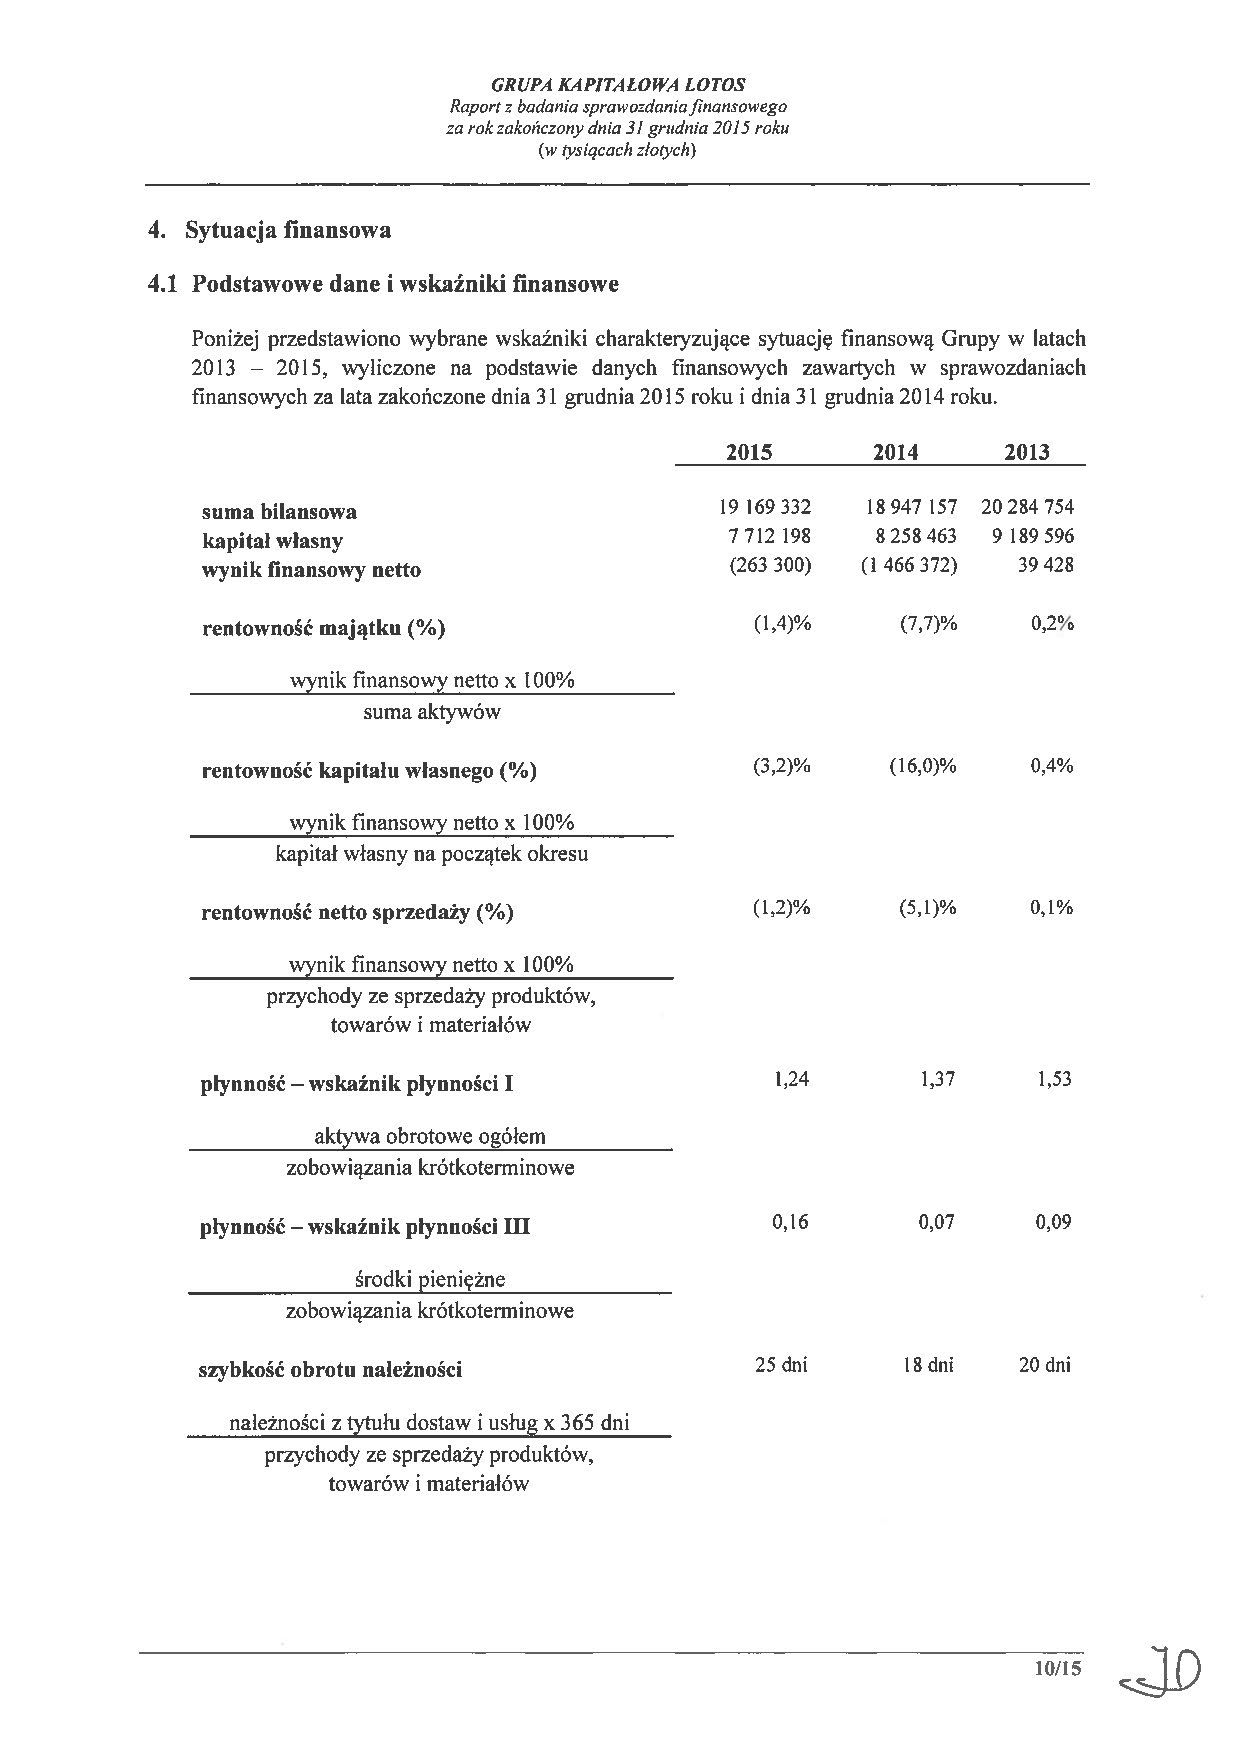 Grupa Kapitalowa LOTOS 2015 - Raport audytora z badania Skonsolidowanego Sprawozdania Finansowego strona 10